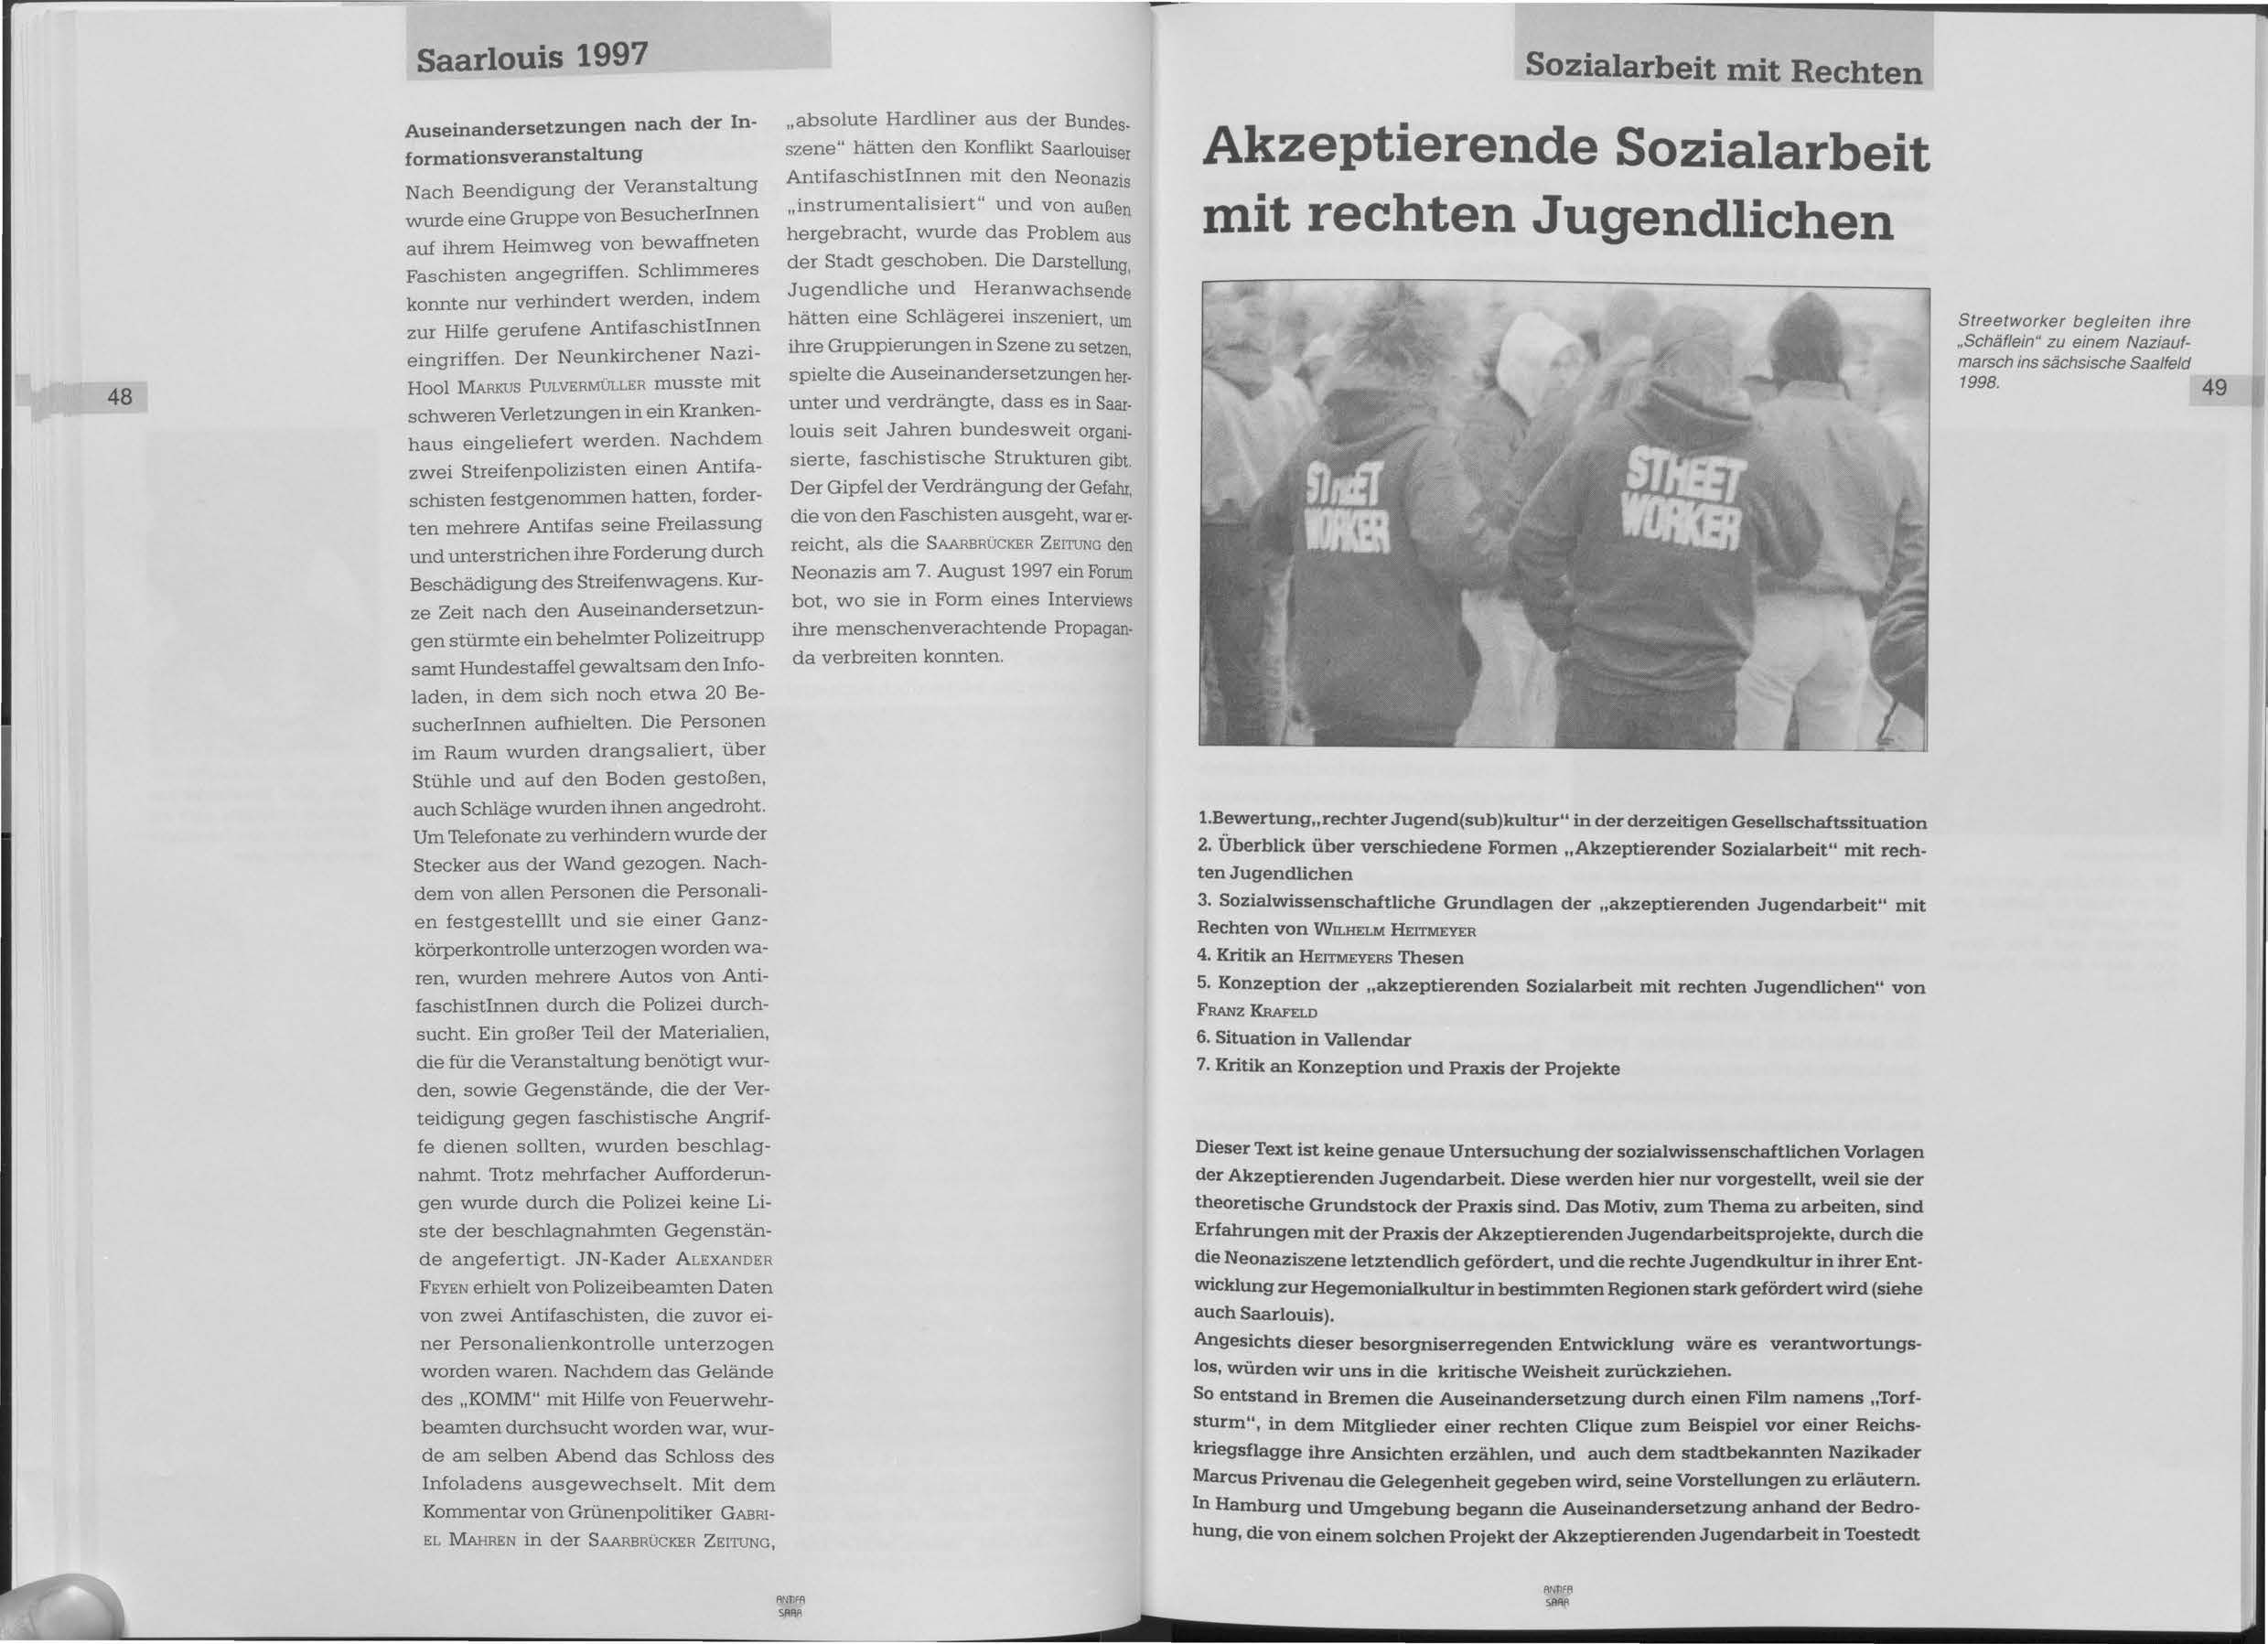 Saarlouis 1997 Sozialarbeit mit Rechten 48 Auseinandersetzungen nach der Informationsveranstaltung Nach Beendigung der Veranstaltung wurde eine Gruppe von Besucherinnen auf ihrem Heimweg von